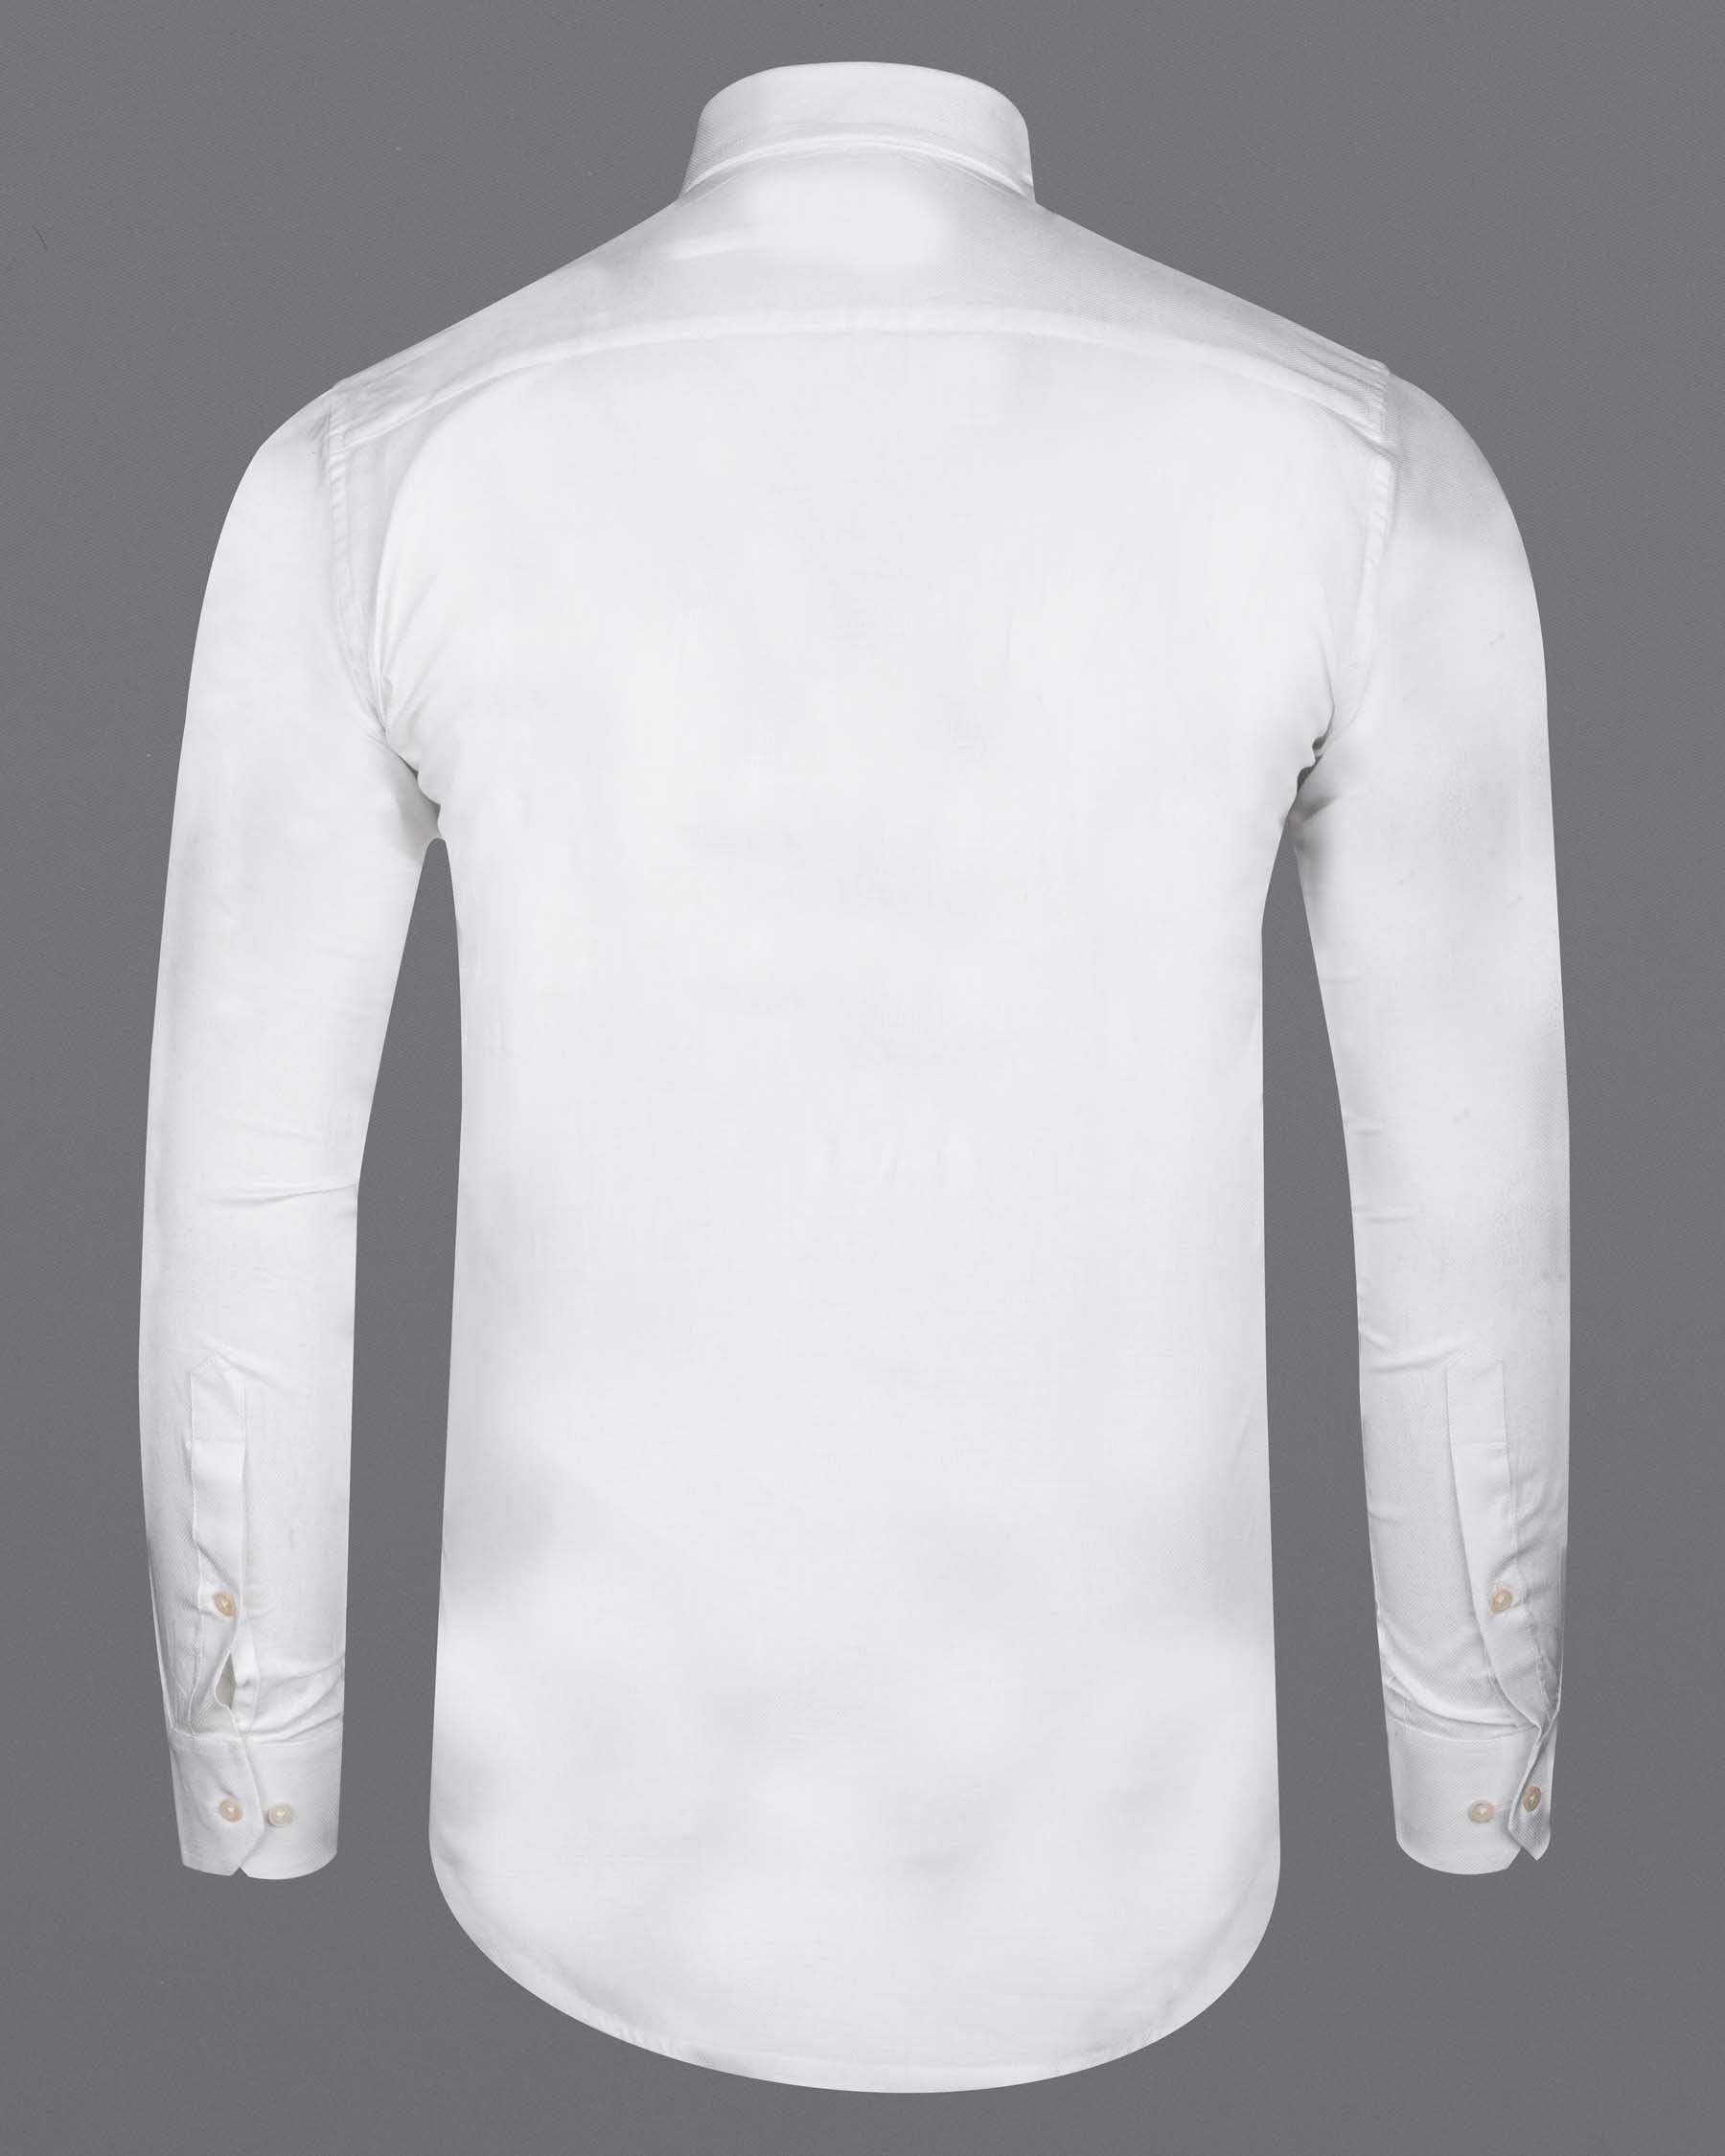 Bright White Dobby Textured Premium Giza Cotton Shirt 6271-P-CA-38, 6271-P-CA-H-38, 6271-P-CA-39, 6271-P-CA-H-39, 6271-P-CA-40, 6271-P-CA-H-40, 6271-P-CA-42, 6271-P-CA-H-42, 6271-P-CA-44, 6271-P-CA-H-44, 6271-P-CA-46, 6271-P-CA-H-46, 6271-P-CA-48, 6271-P-CA-H-48, 6271-P-CA-50, 6271-P-CA-H-50, 6271-P-CA-52, 6271-P-CA-H-52